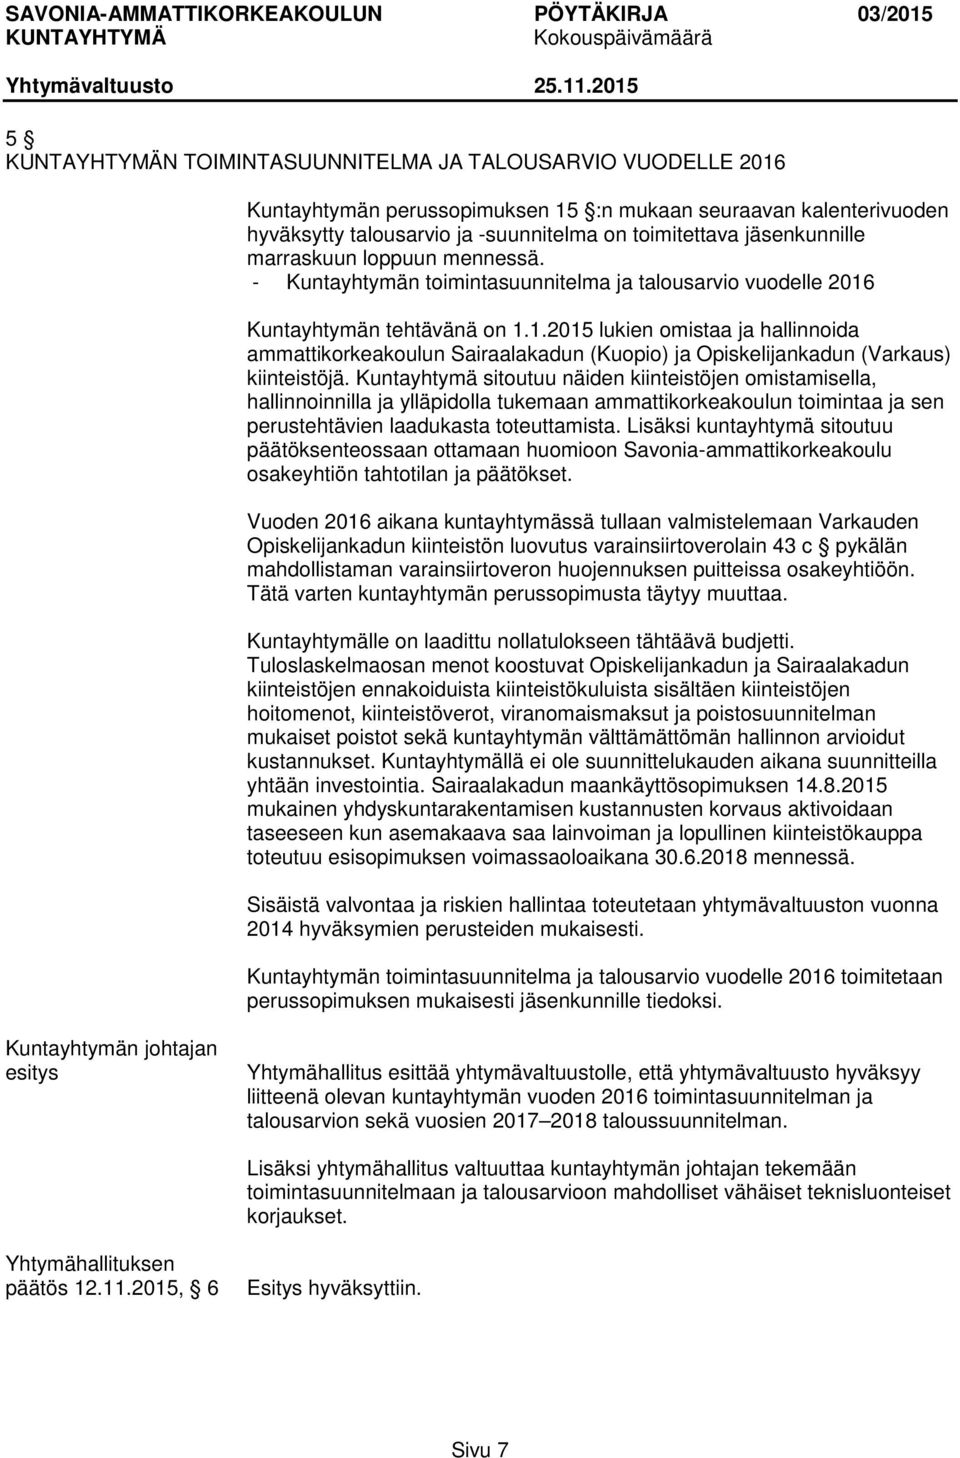 Kuntayhtymän tehtävänä on 1.1.2015 lukien omistaa ja hallinnoida ammattikorkeakoulun Sairaalakadun (Kuopio) ja Opiskelijankadun (Varkaus) kiinteistöjä.